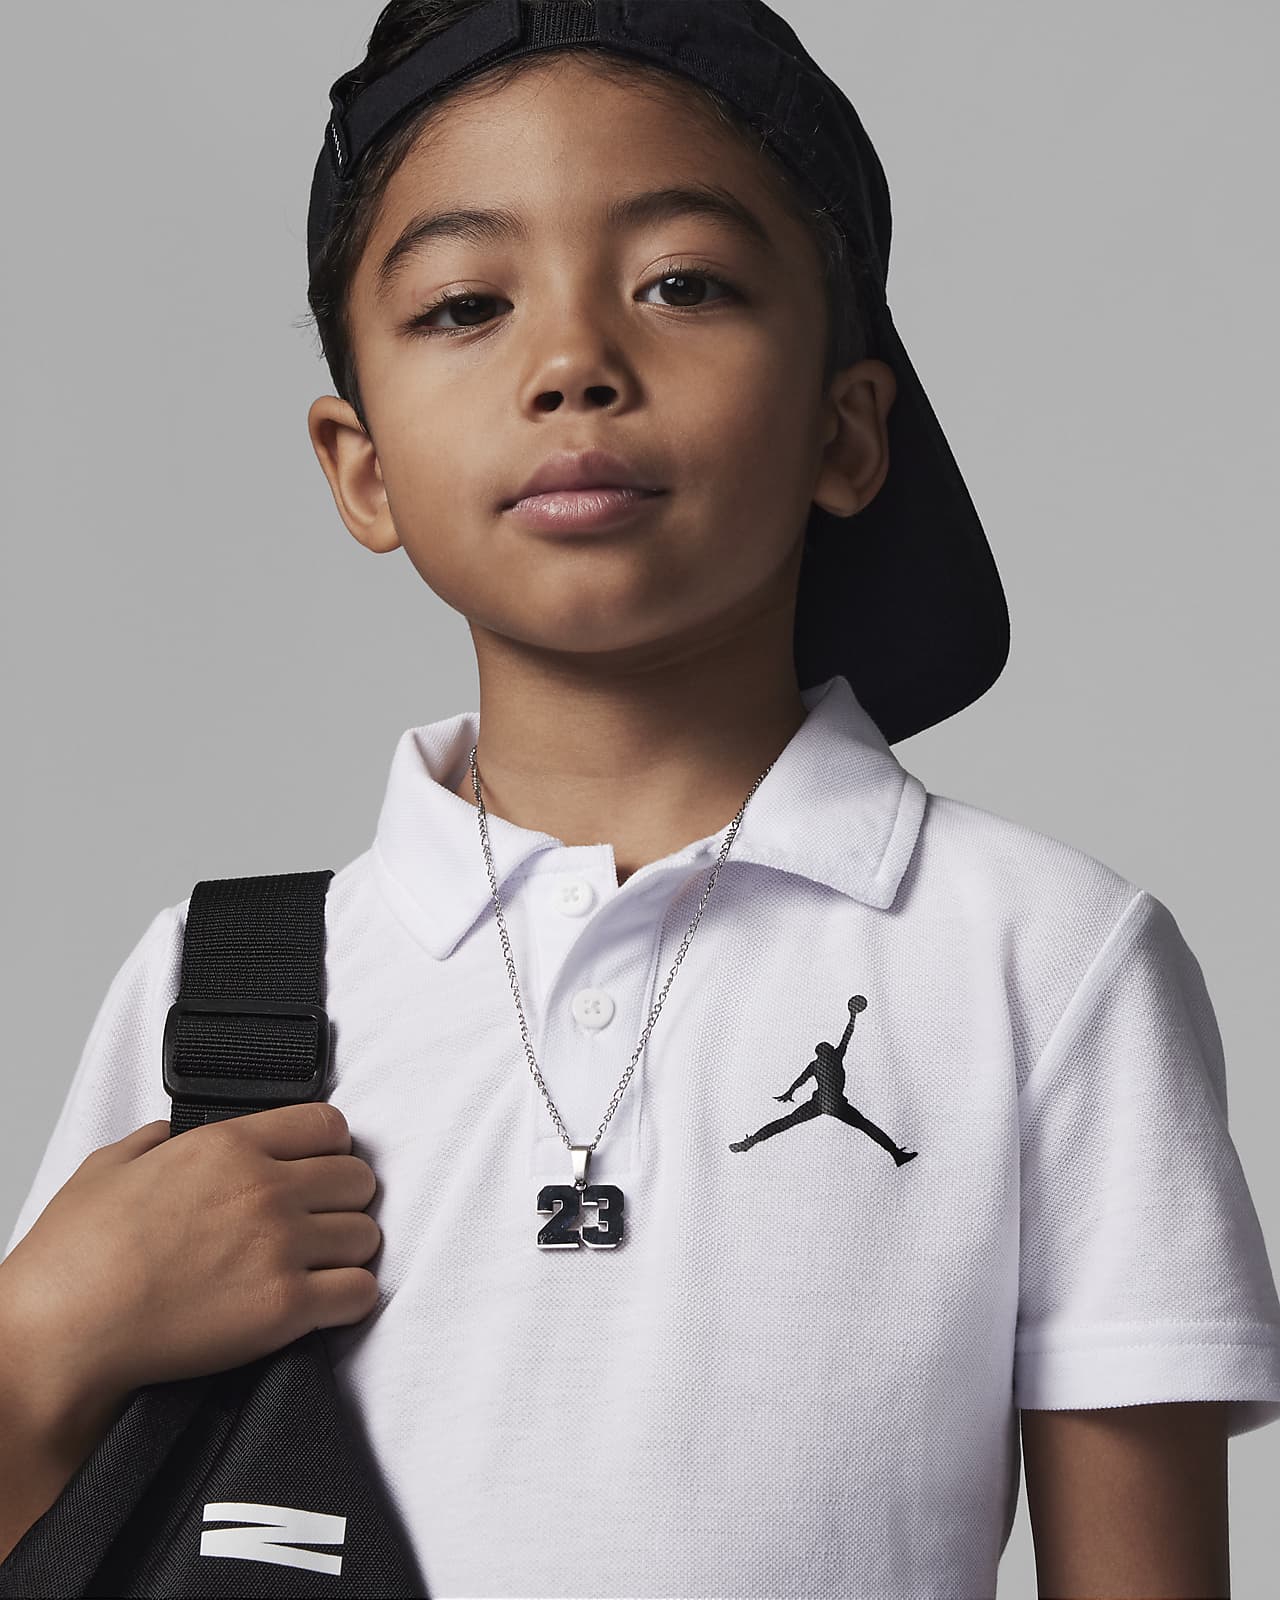 Michael Jordan Polo Shirts | lupon.gov.ph